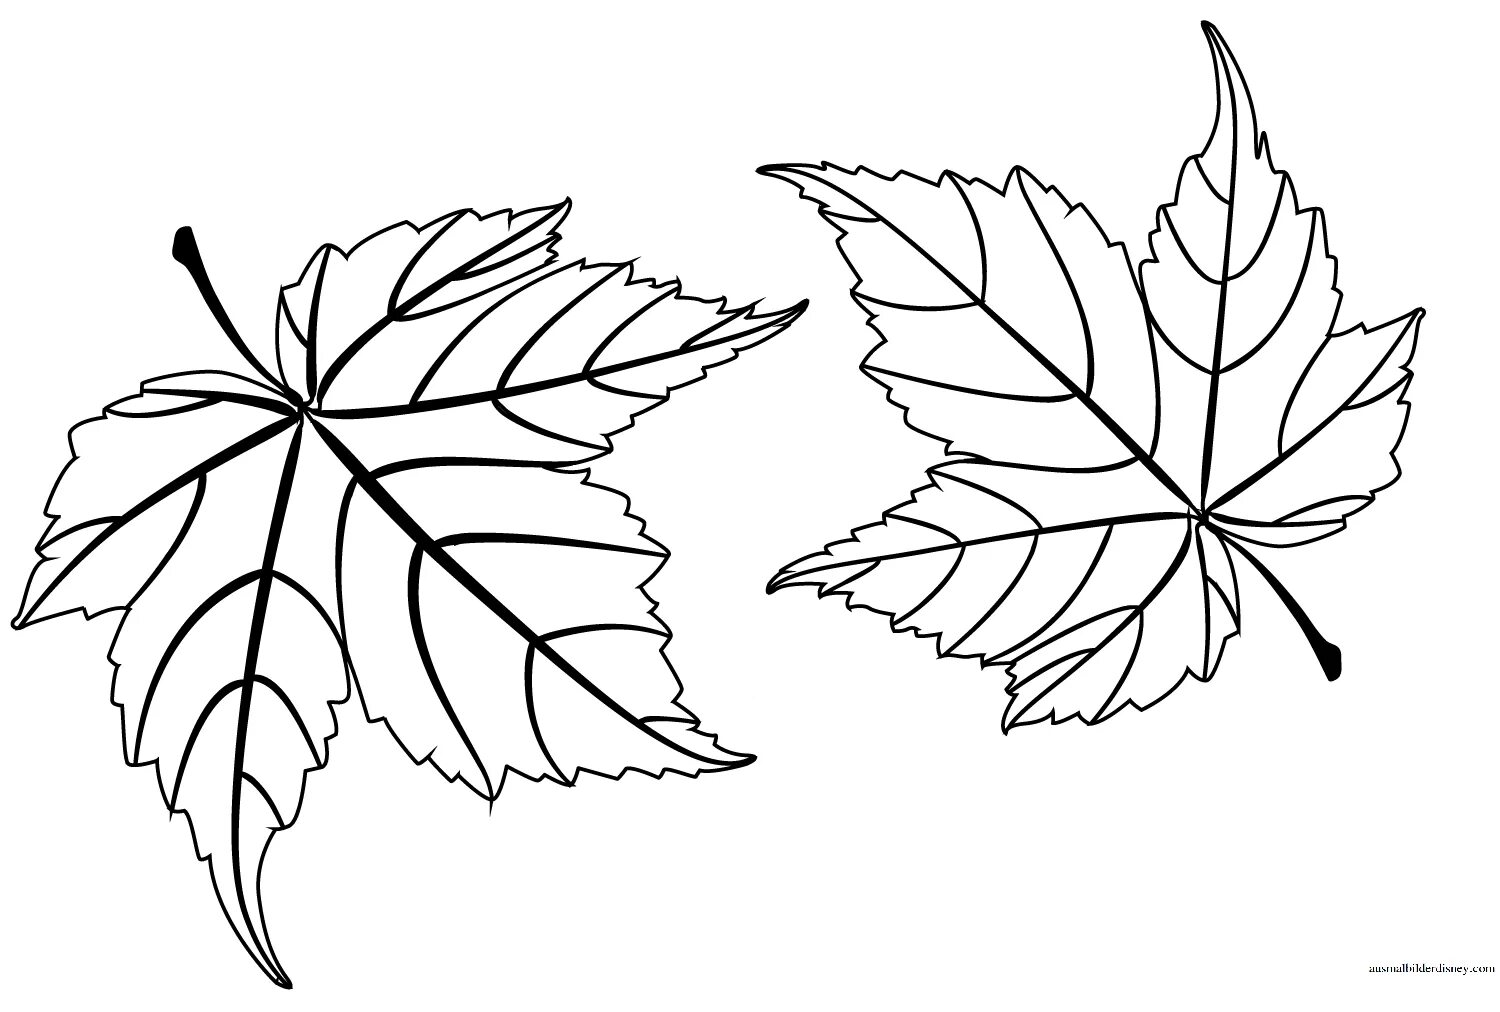 Черно белые картинки листьев. Осенние листья раскраска для детей. Кленовый лист раскраска. Листья раскраска для детей. Осенние листья трафареты для вырезания.